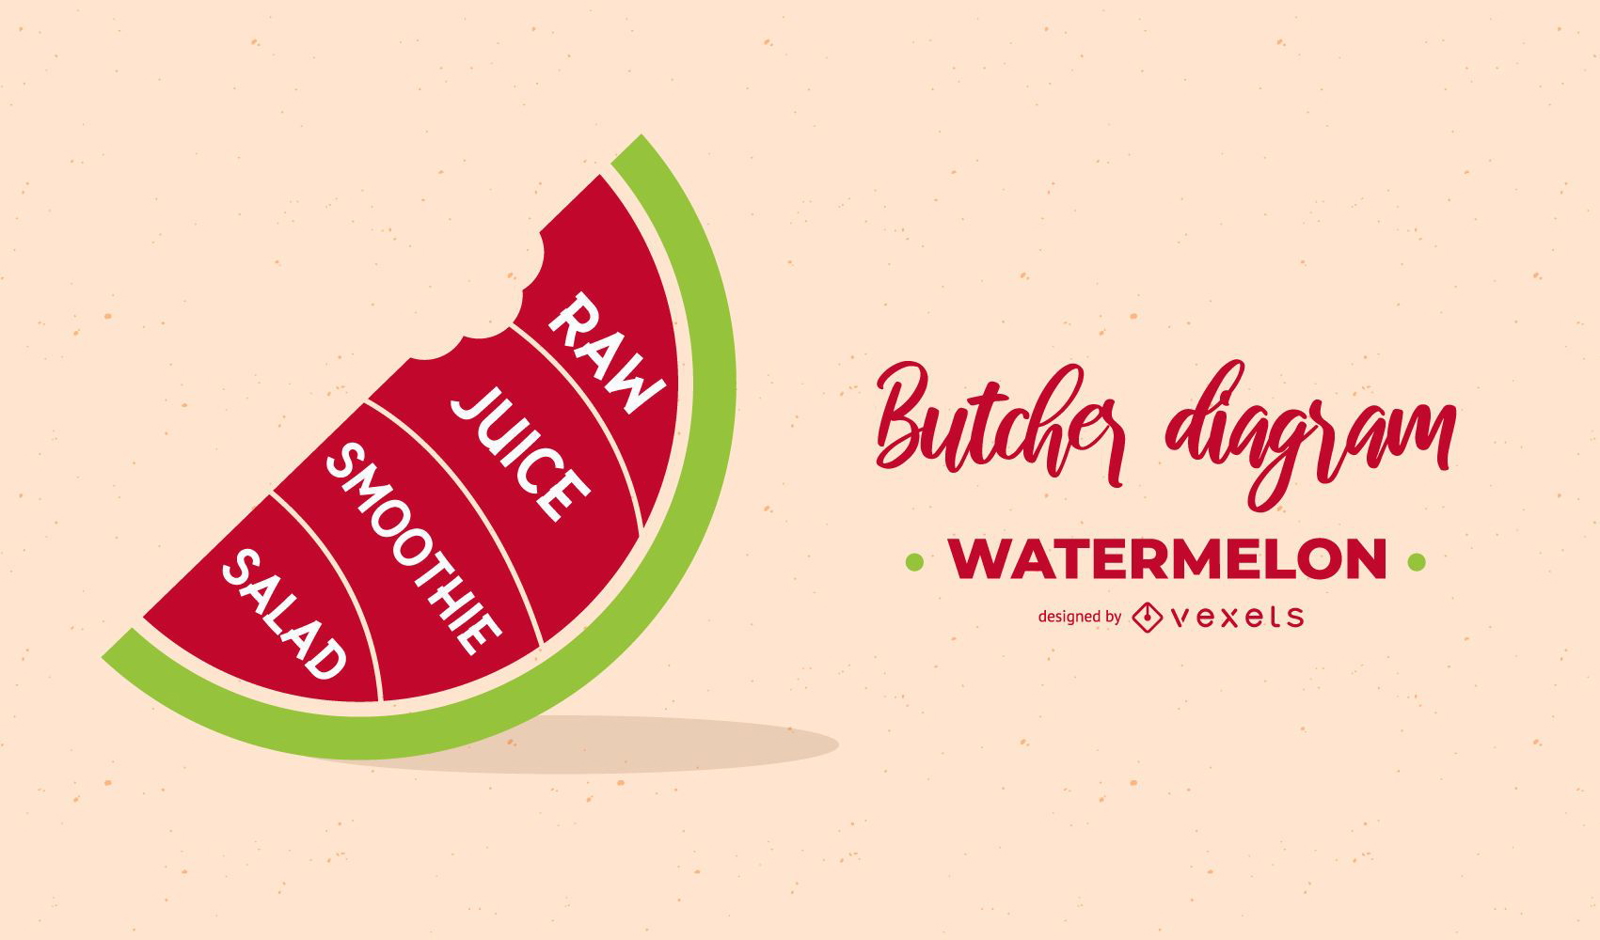 Watermelon Butcher Diagram Design